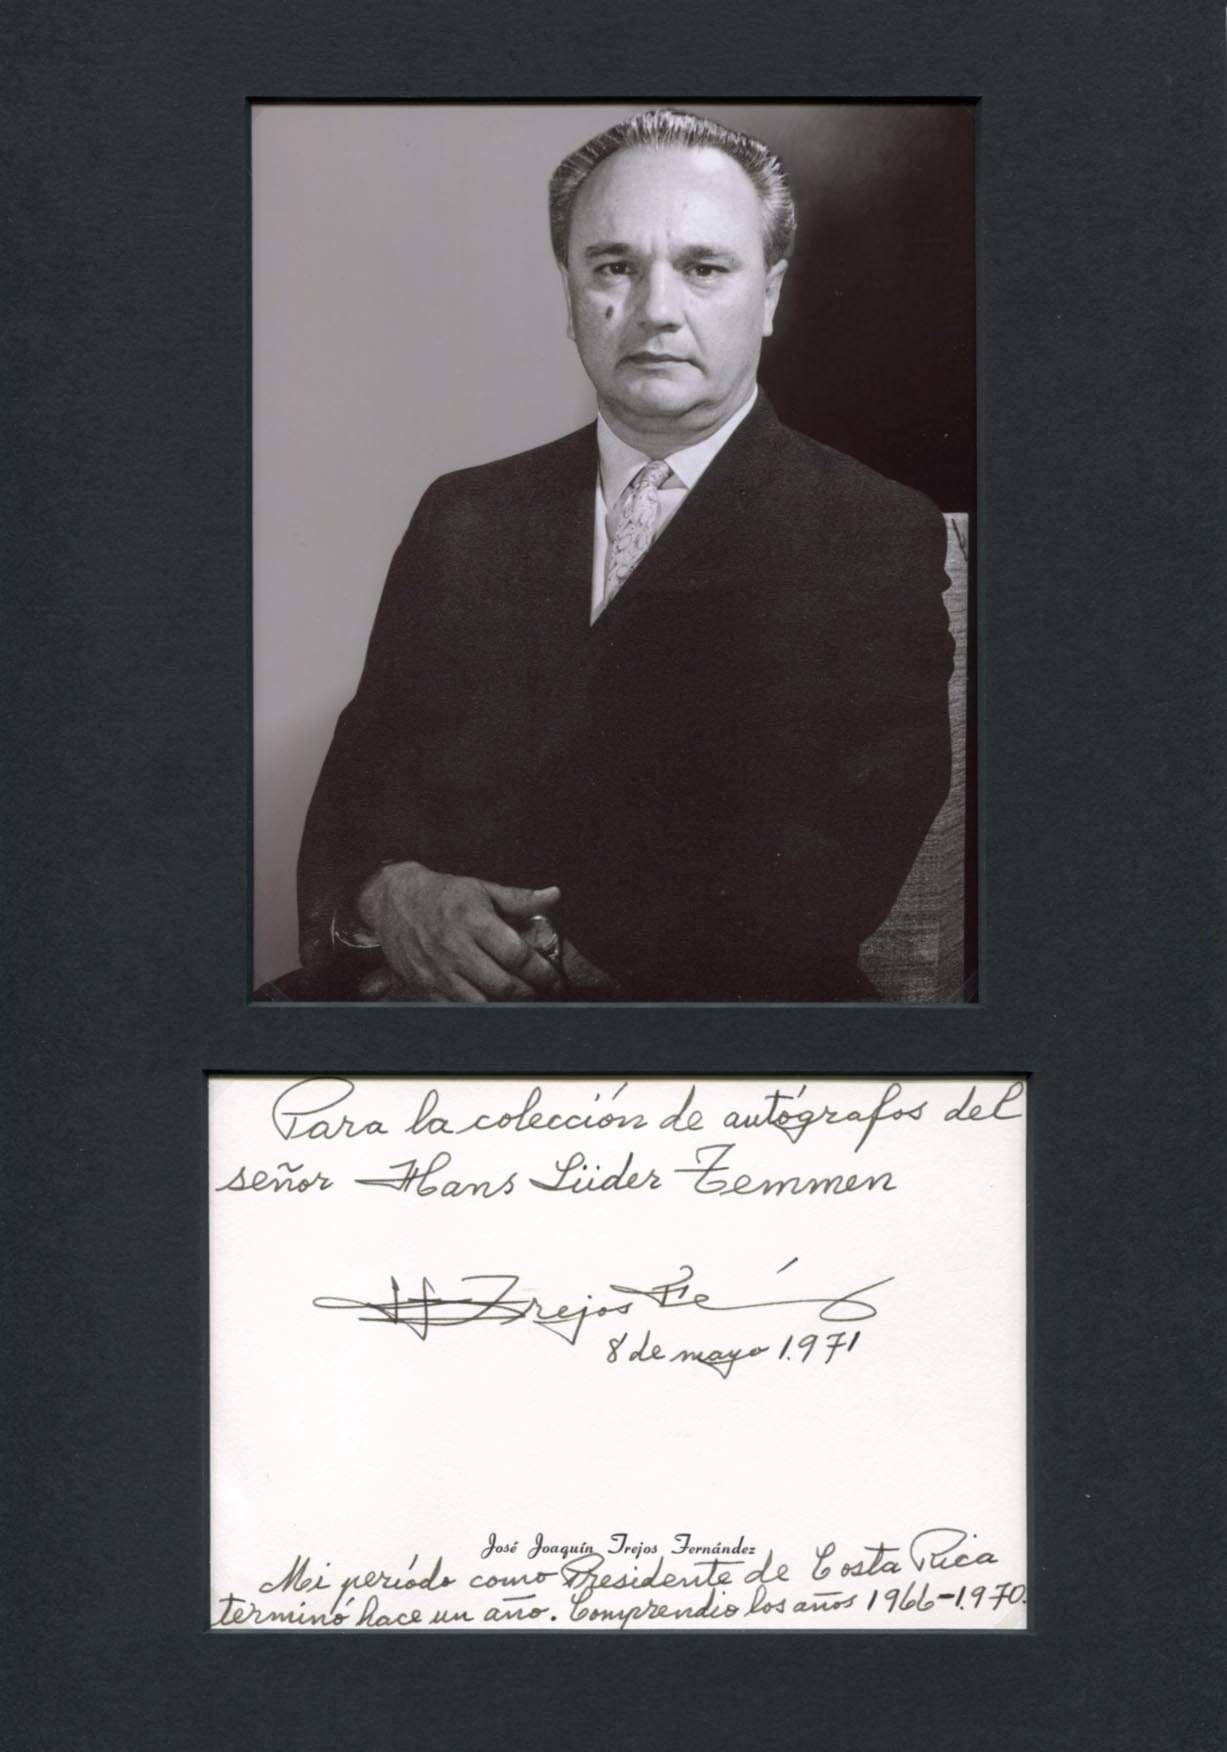 Trejos Fernandes, Jose Joaquin autograph